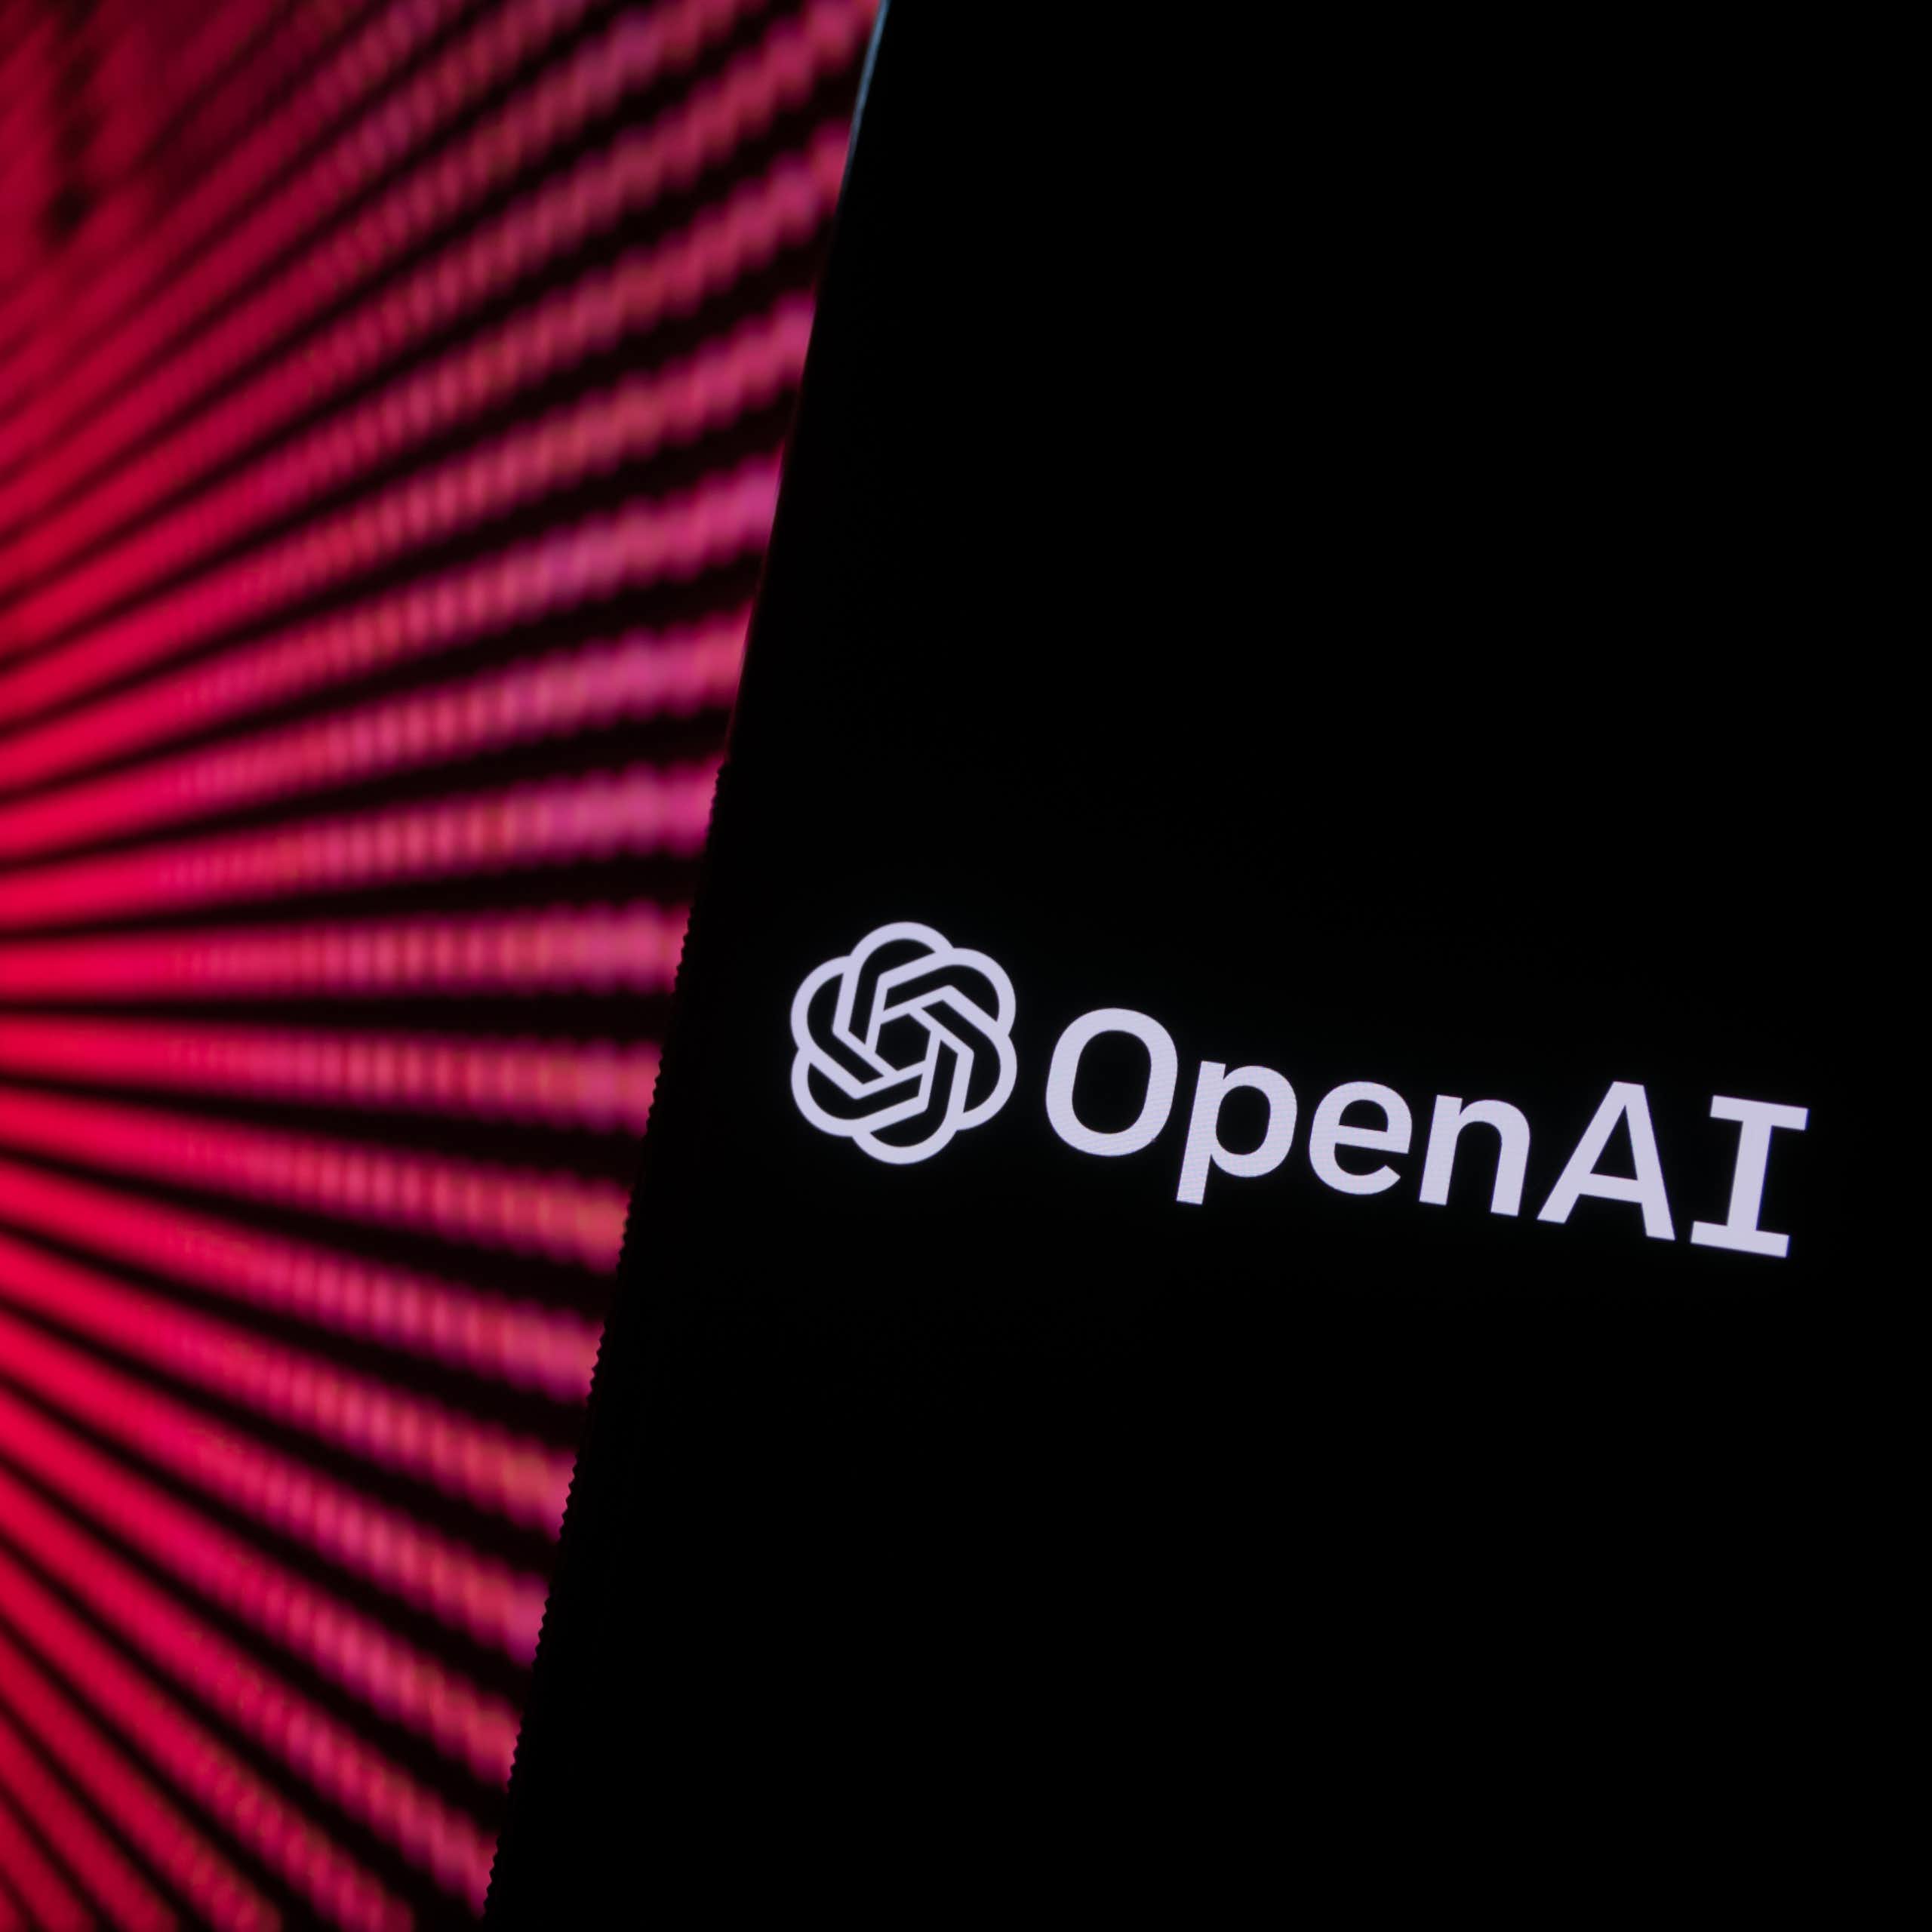 OpenAI supera a Shein y Airbnb: así crece el interés de inversores y público por la startup de IA